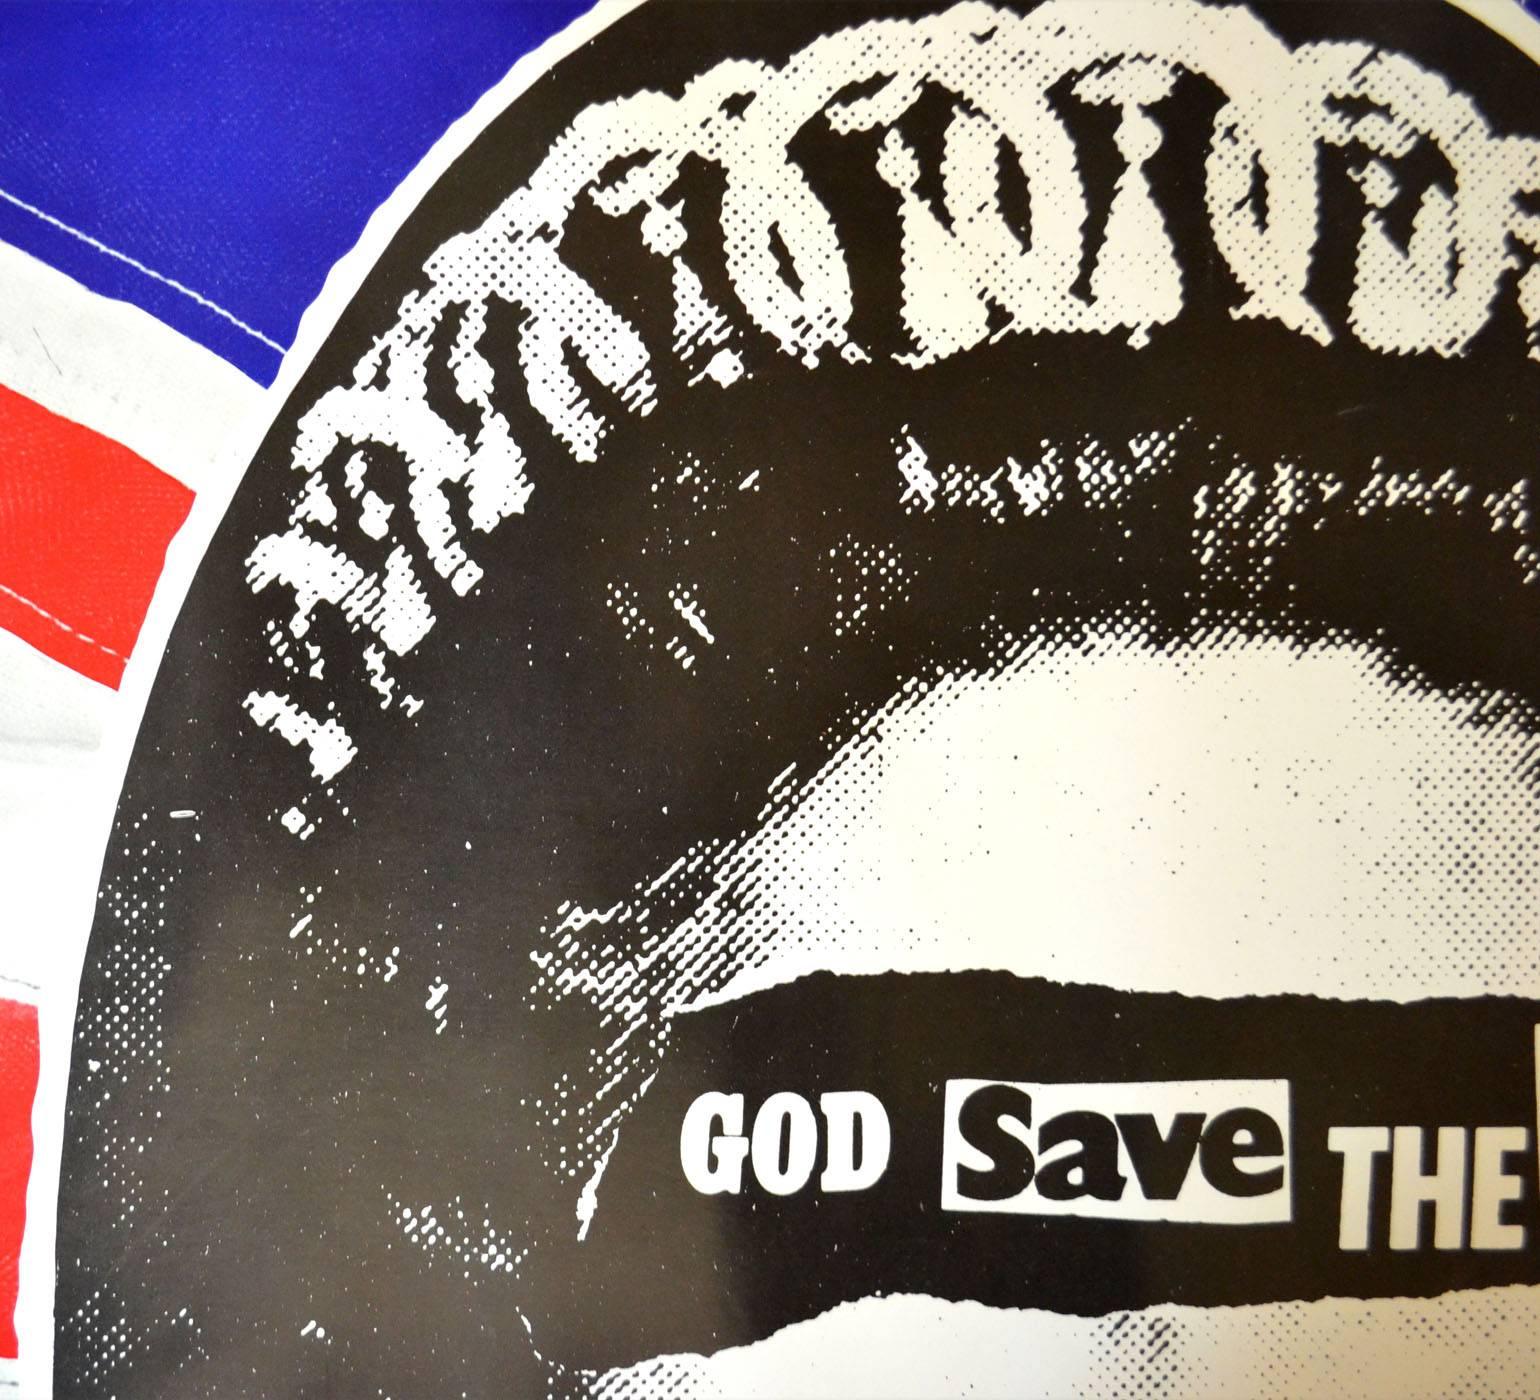 Sex Pistols - Poster promotionnel original de God Save the Queen 2